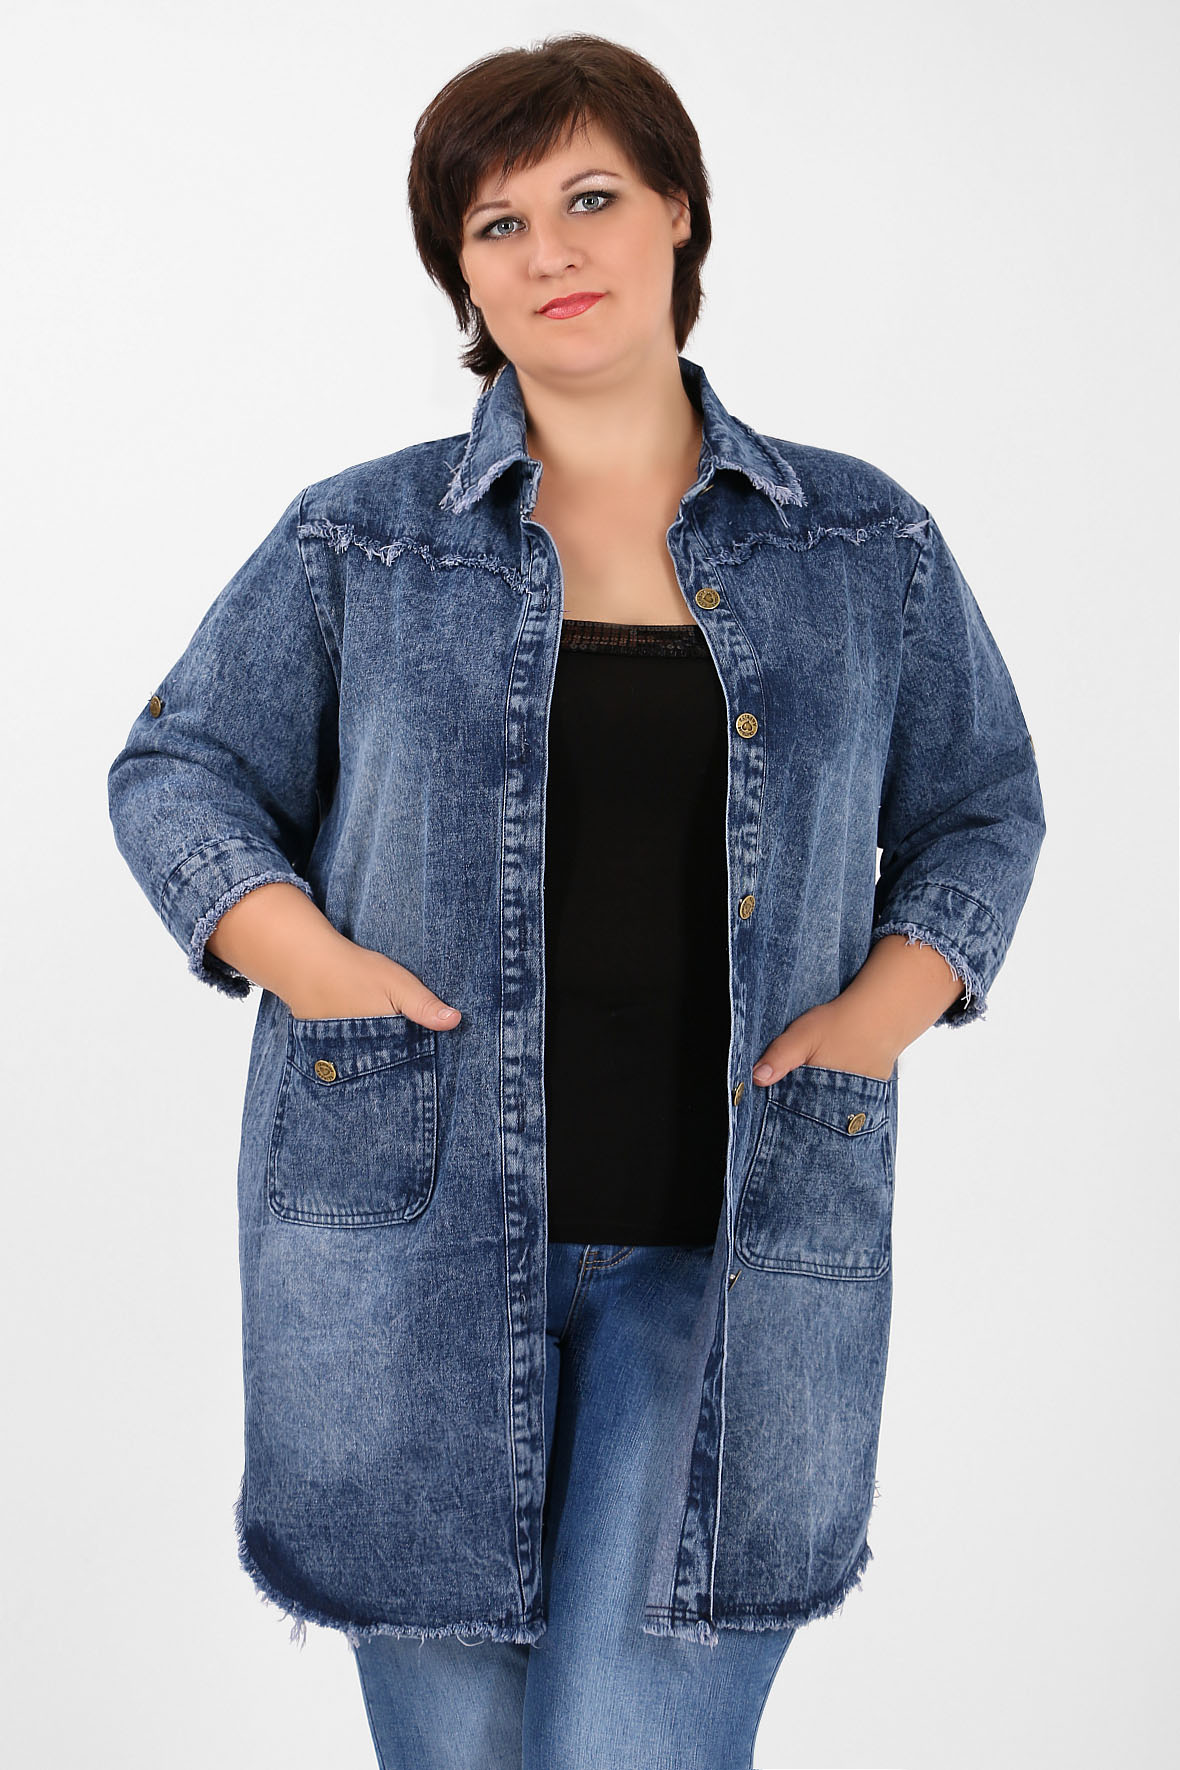 Модели джинсовых курток для женщин 50 лет